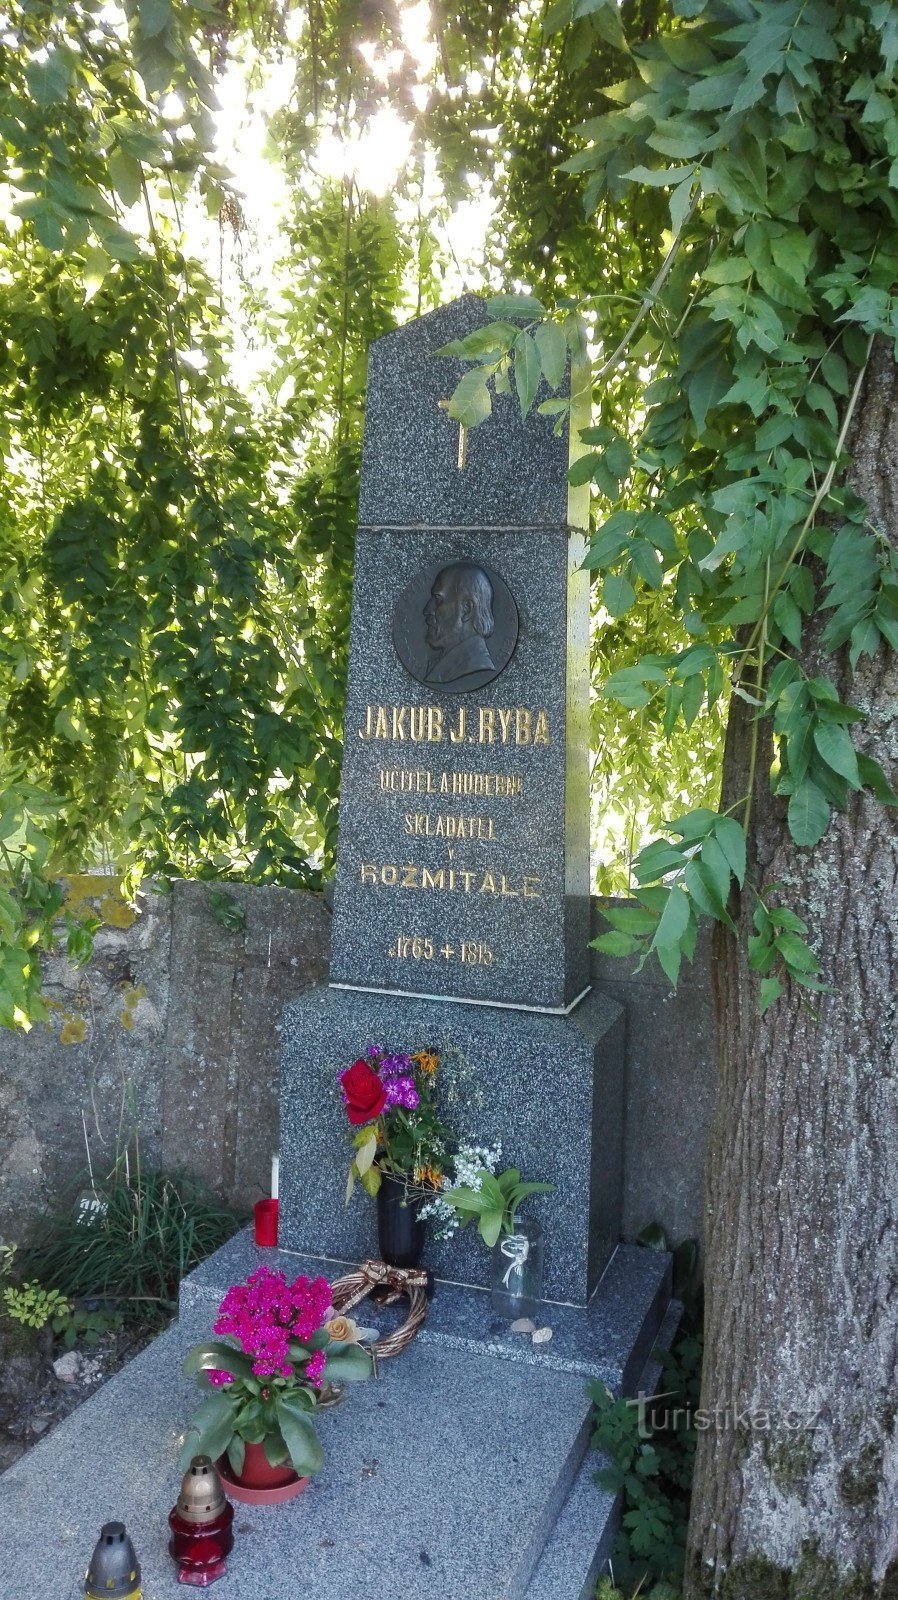 Памятник Й. Й. Рыбе в Старом Рожмитале.